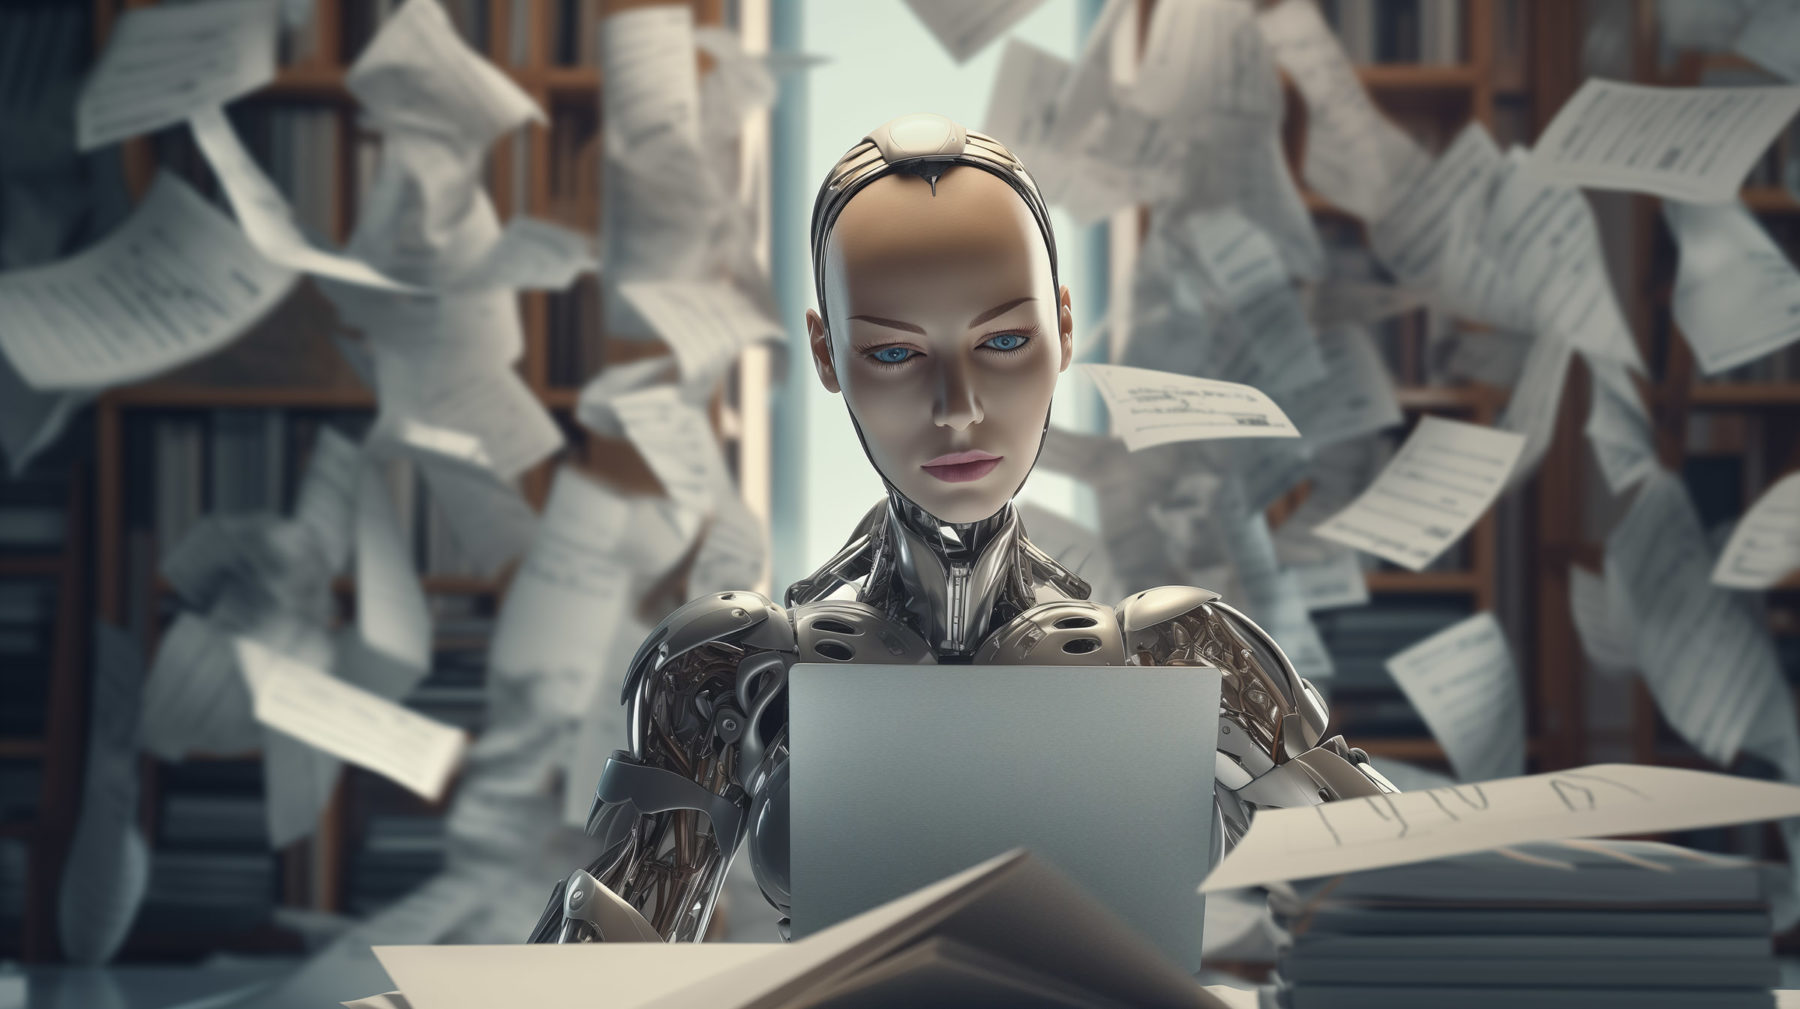 Gebärdensprachavatar: Das Bild zeigt eine sehr detaillierte und realistische Darstellung eines humanoiden Roboters, der an einem Schreibtisch sitzt.